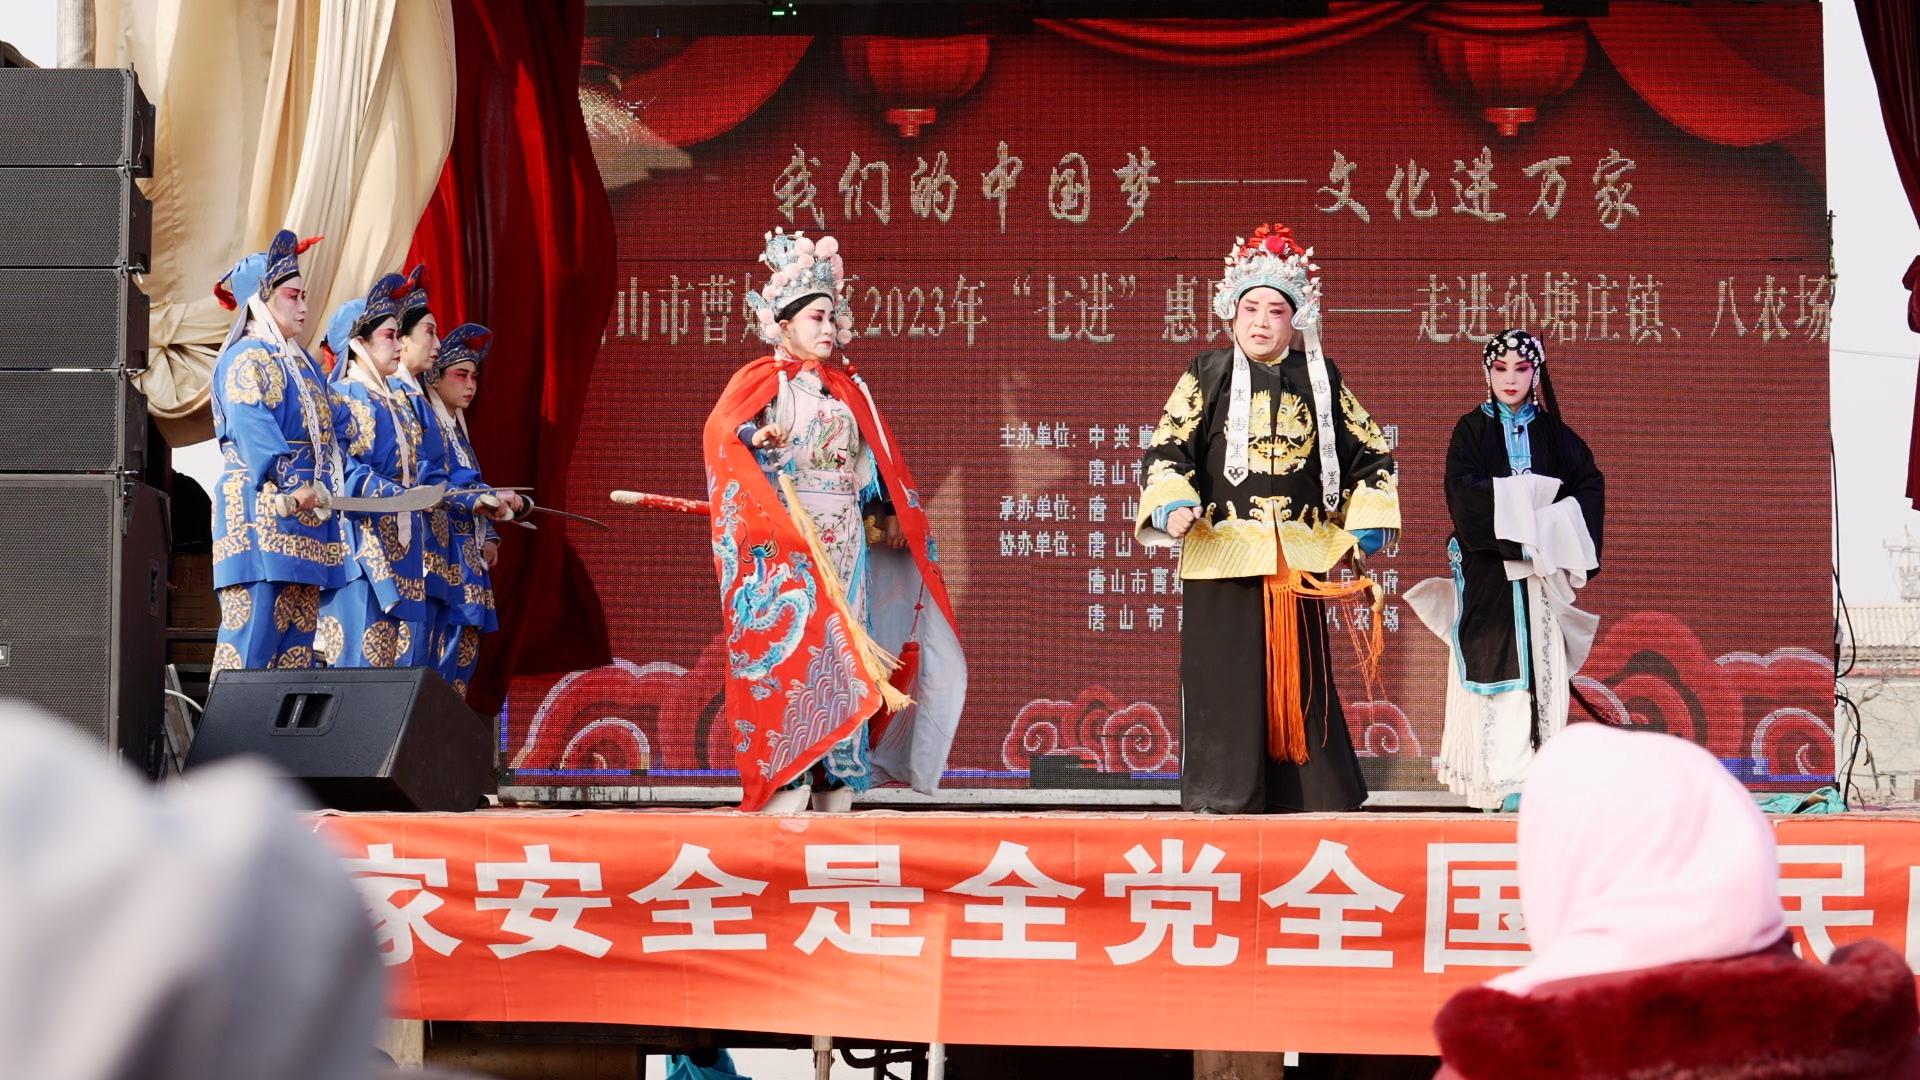 文化随行-“焕新艺术季” ——评剧大戏《李三娘》在汉沽大剧院精彩上演